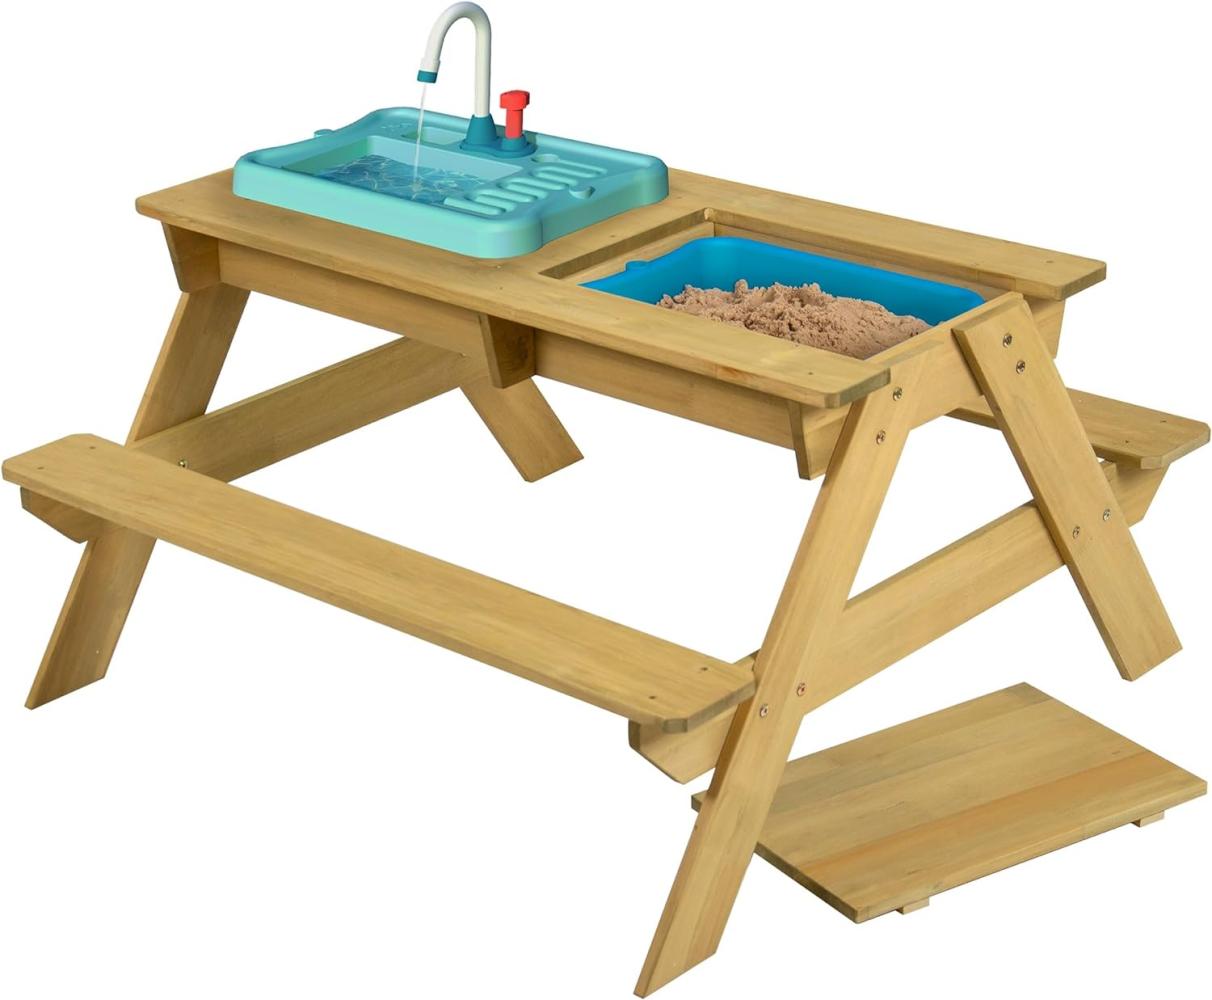 TP Toys Holz Spieltisch & Matschtisch Murmeltier | inkl. Waschbecken und Sandkasten | Natur | 89x94x51 cm Bild 1